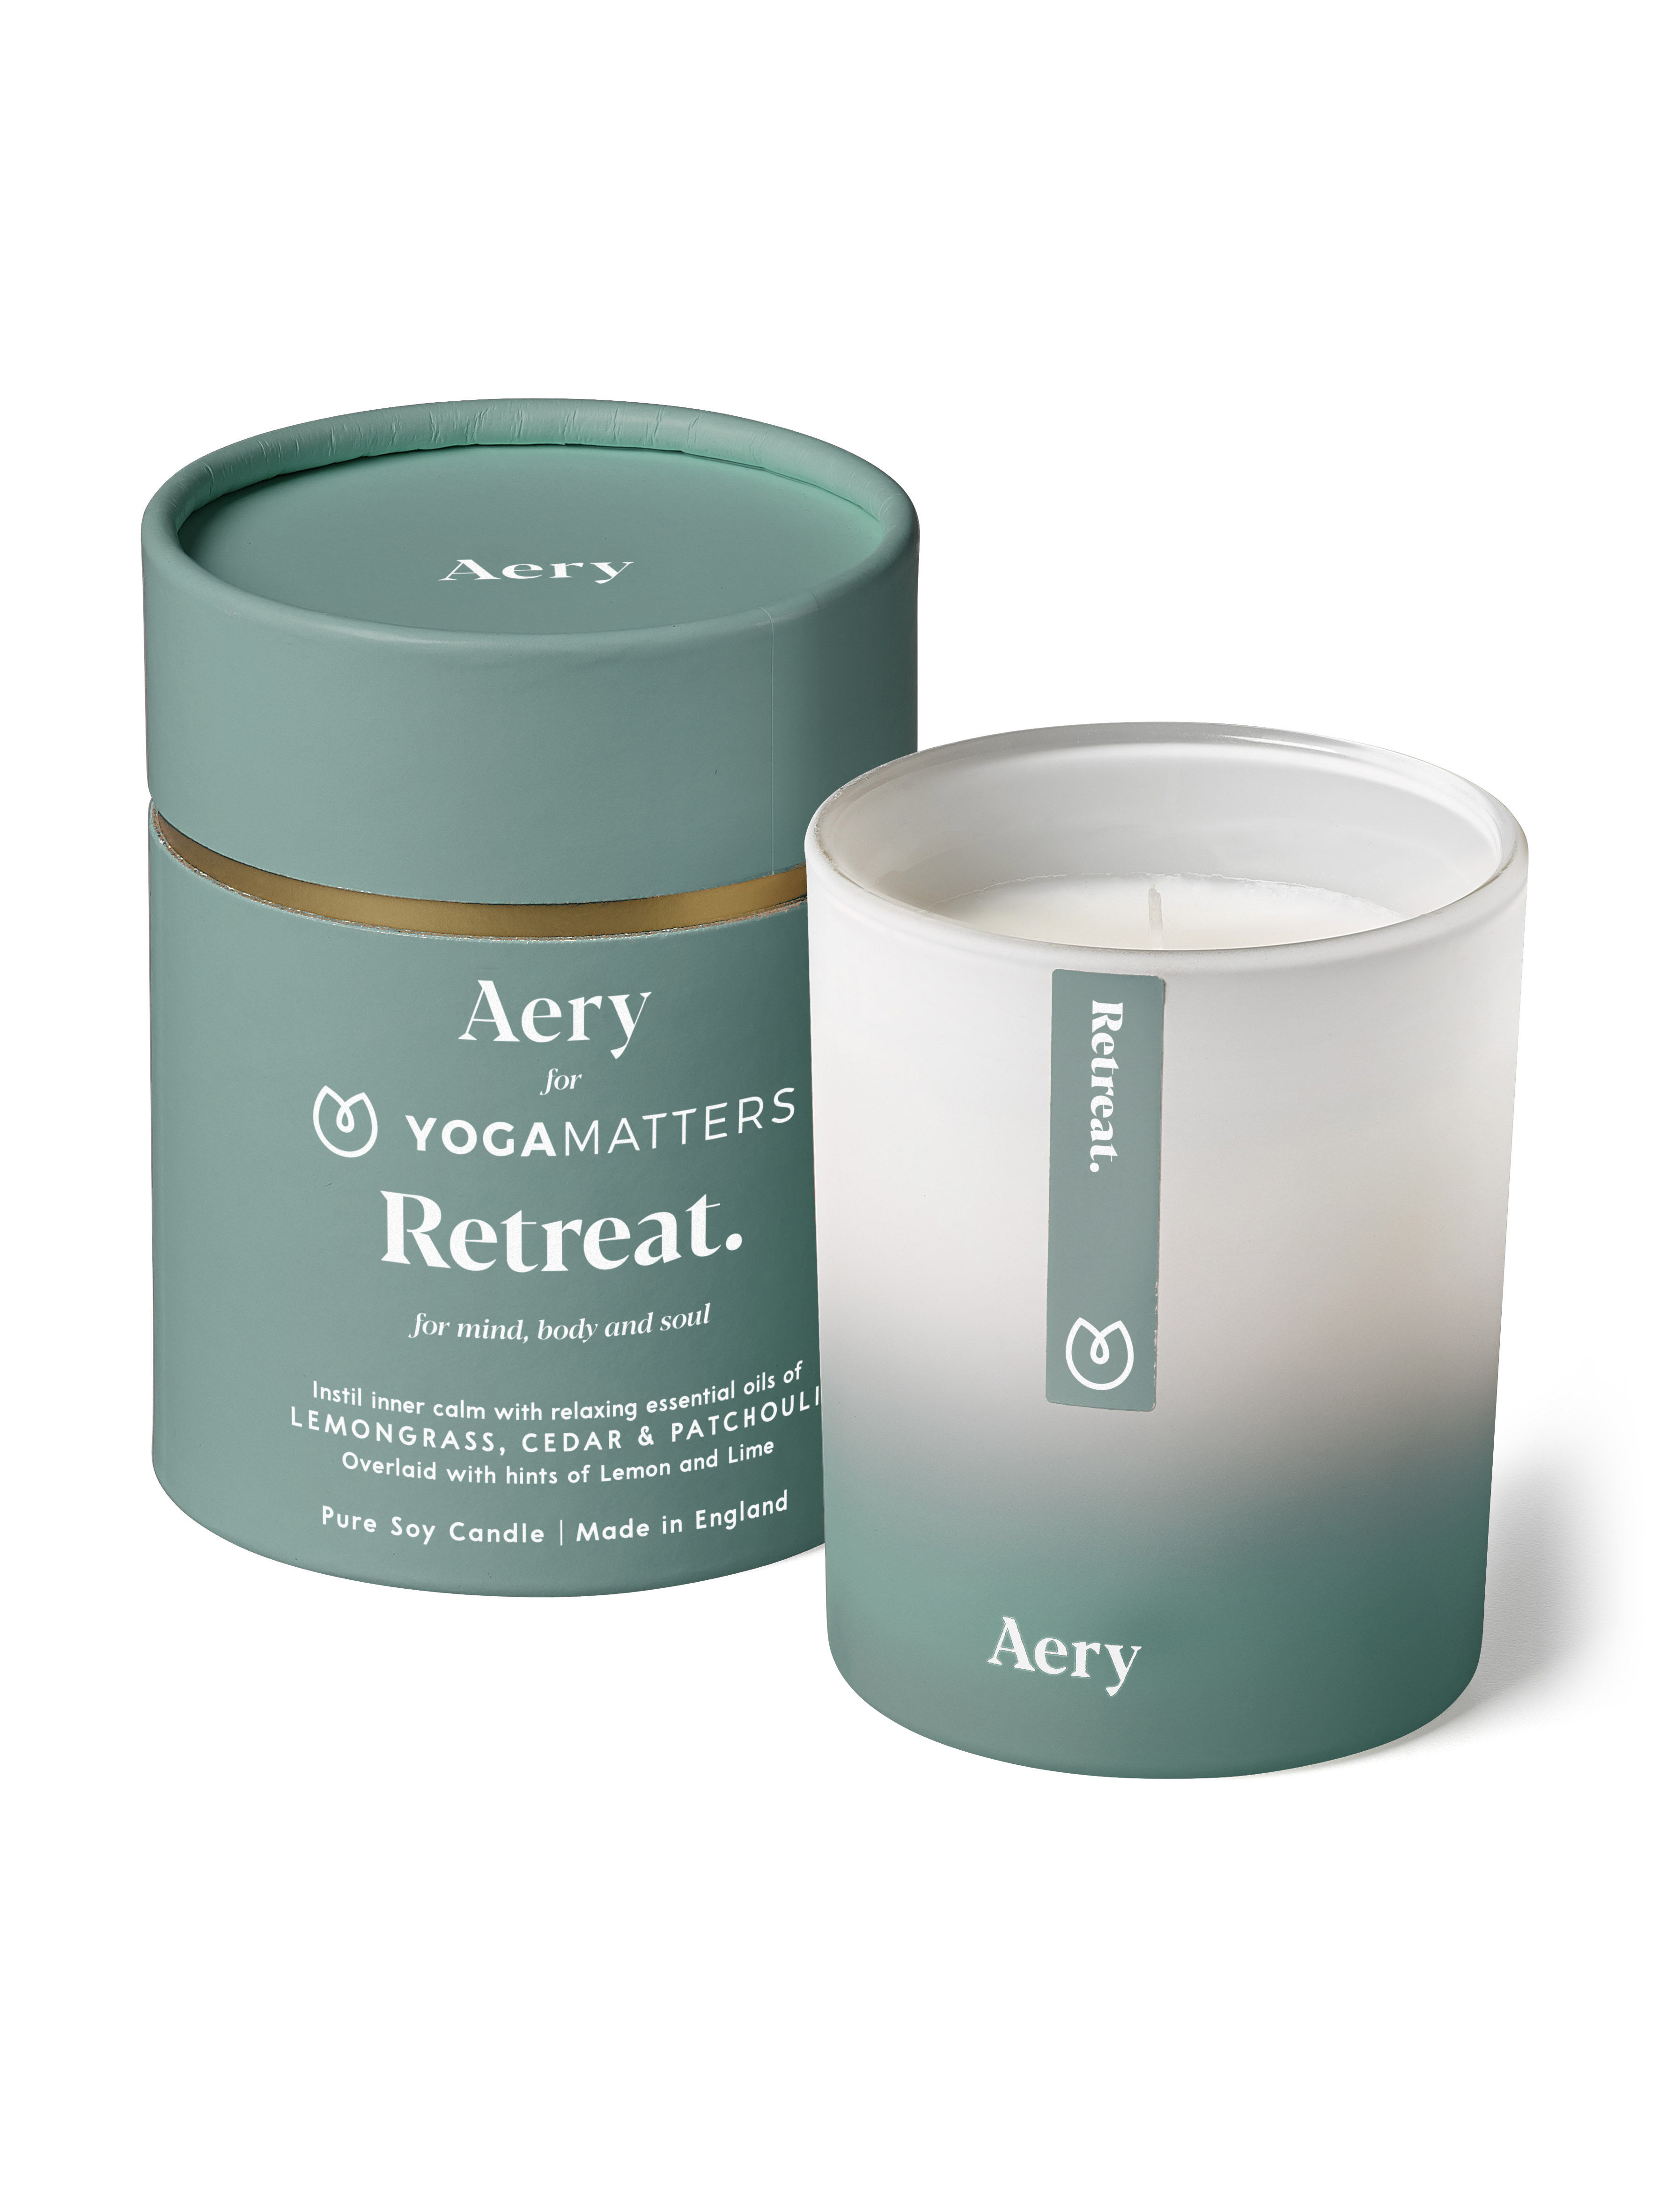 Aery Retreat - Yoga Matters Aromatherapy Candle